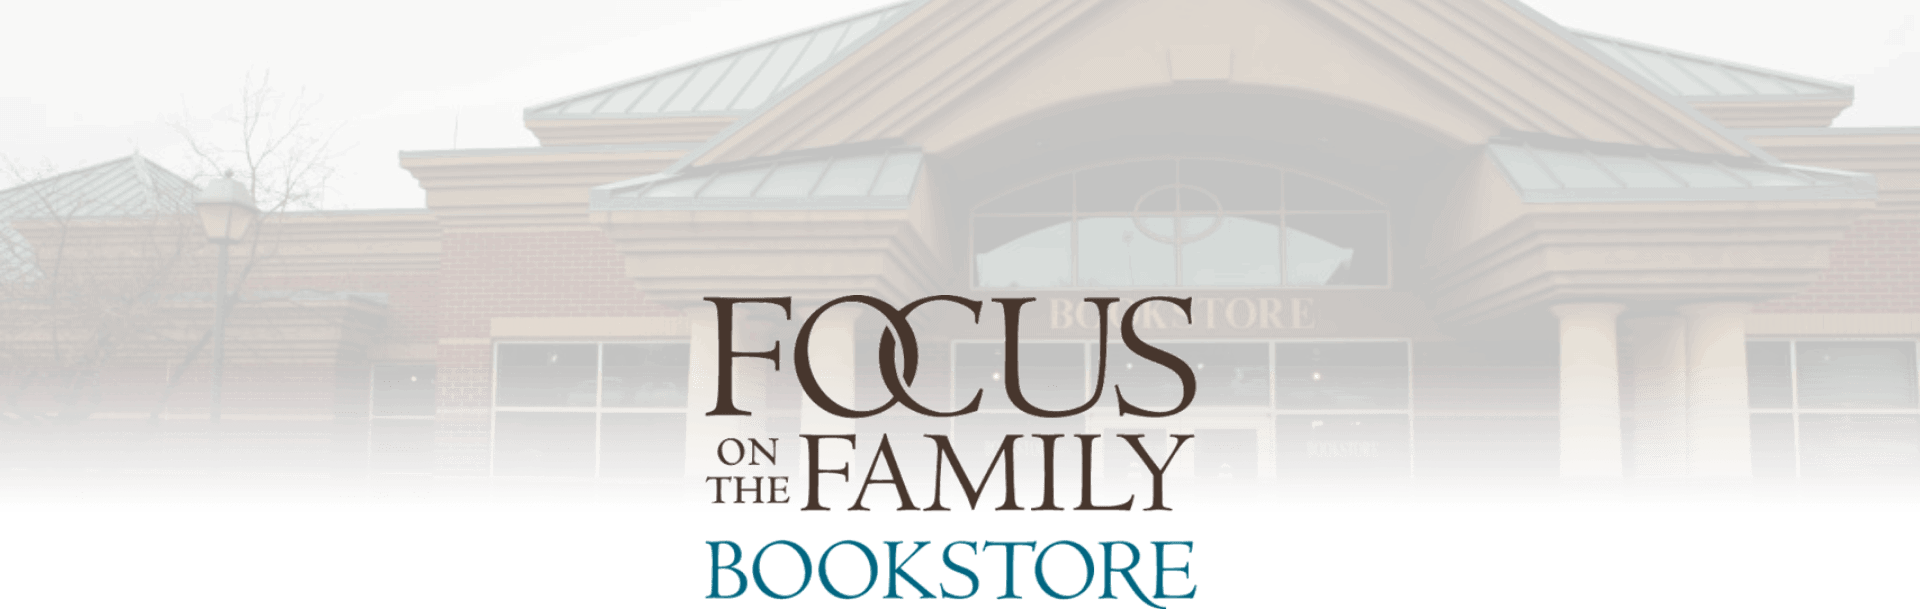 Colorado Springs, Colorado Focus on the Family Bookstore Header